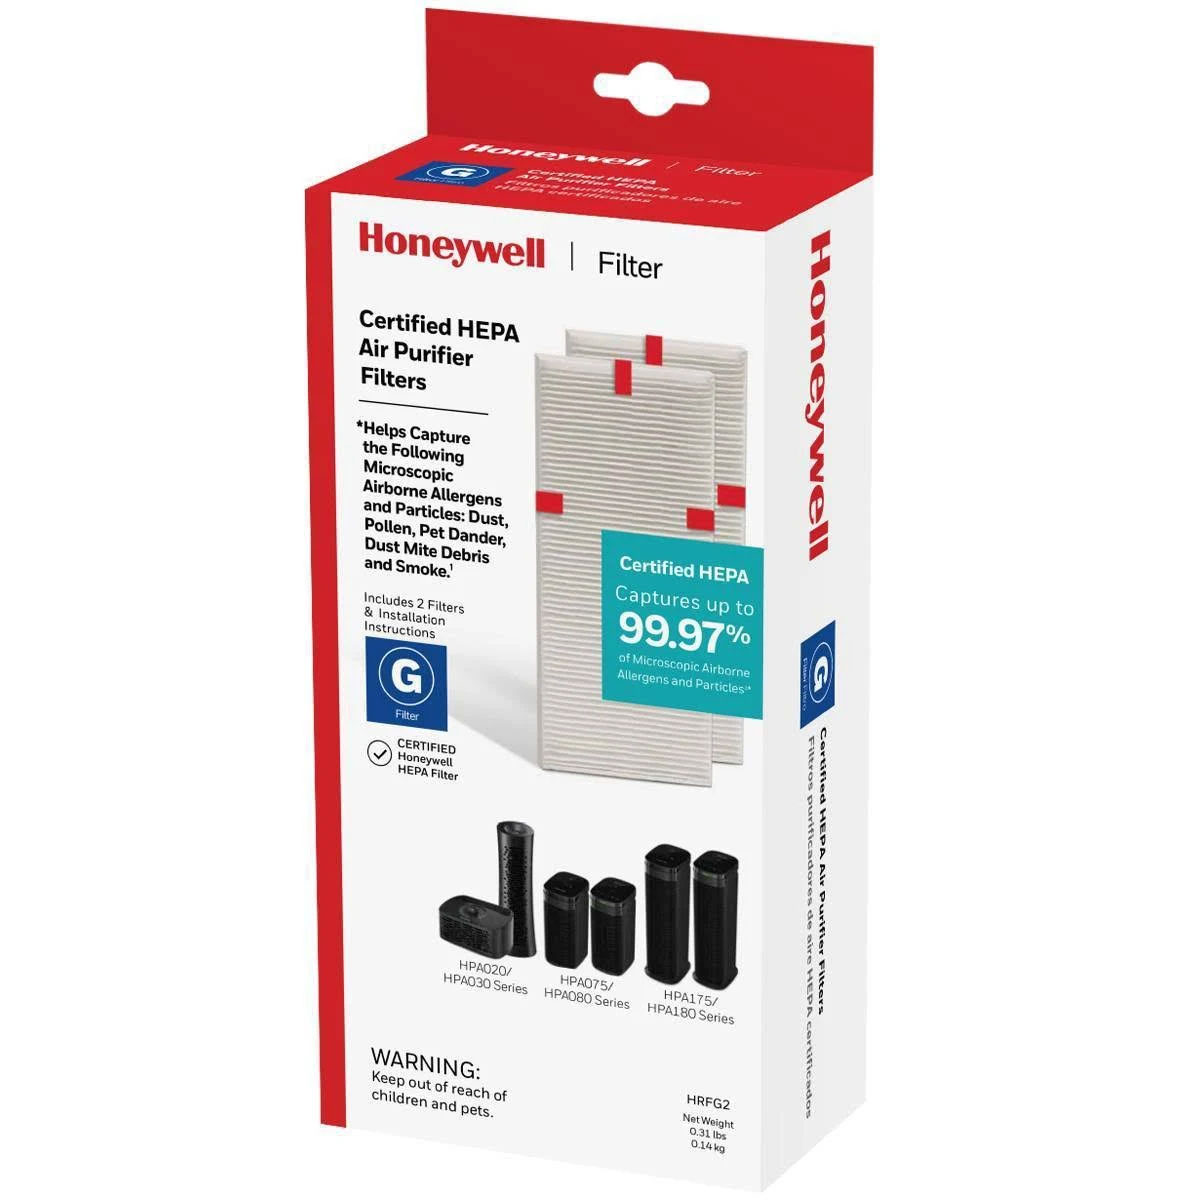 Honeywell Replacement Filter G True HEPA Air Purifier Filters - 2 Pack, HRF-G2